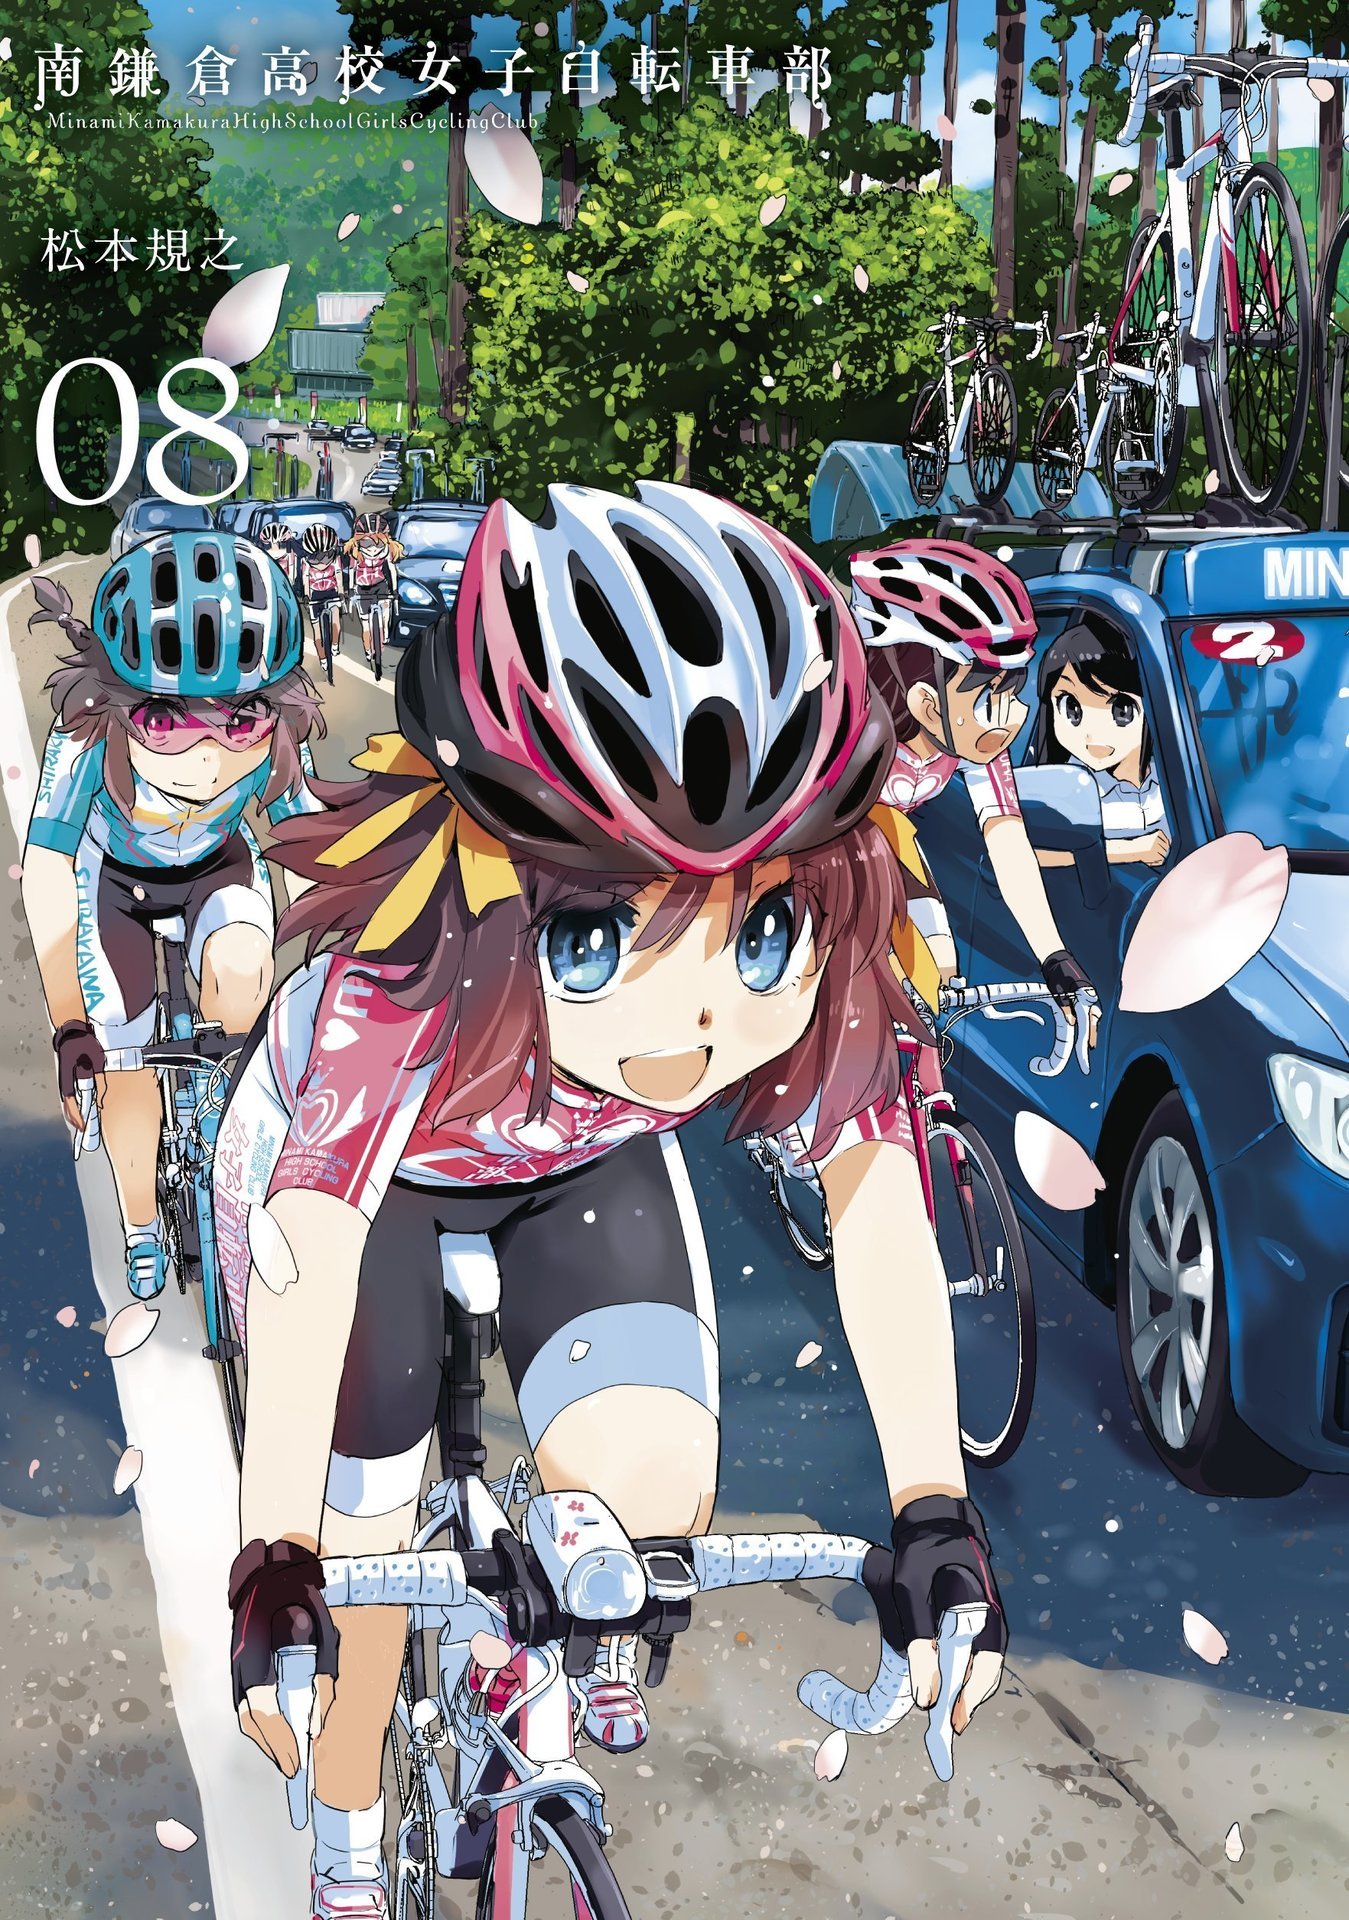 テレビアニメ 南鎌倉高校女子自転車部 17年1月 At X テレビ神奈川ほかにて放送 マンガのことを書いたブログ